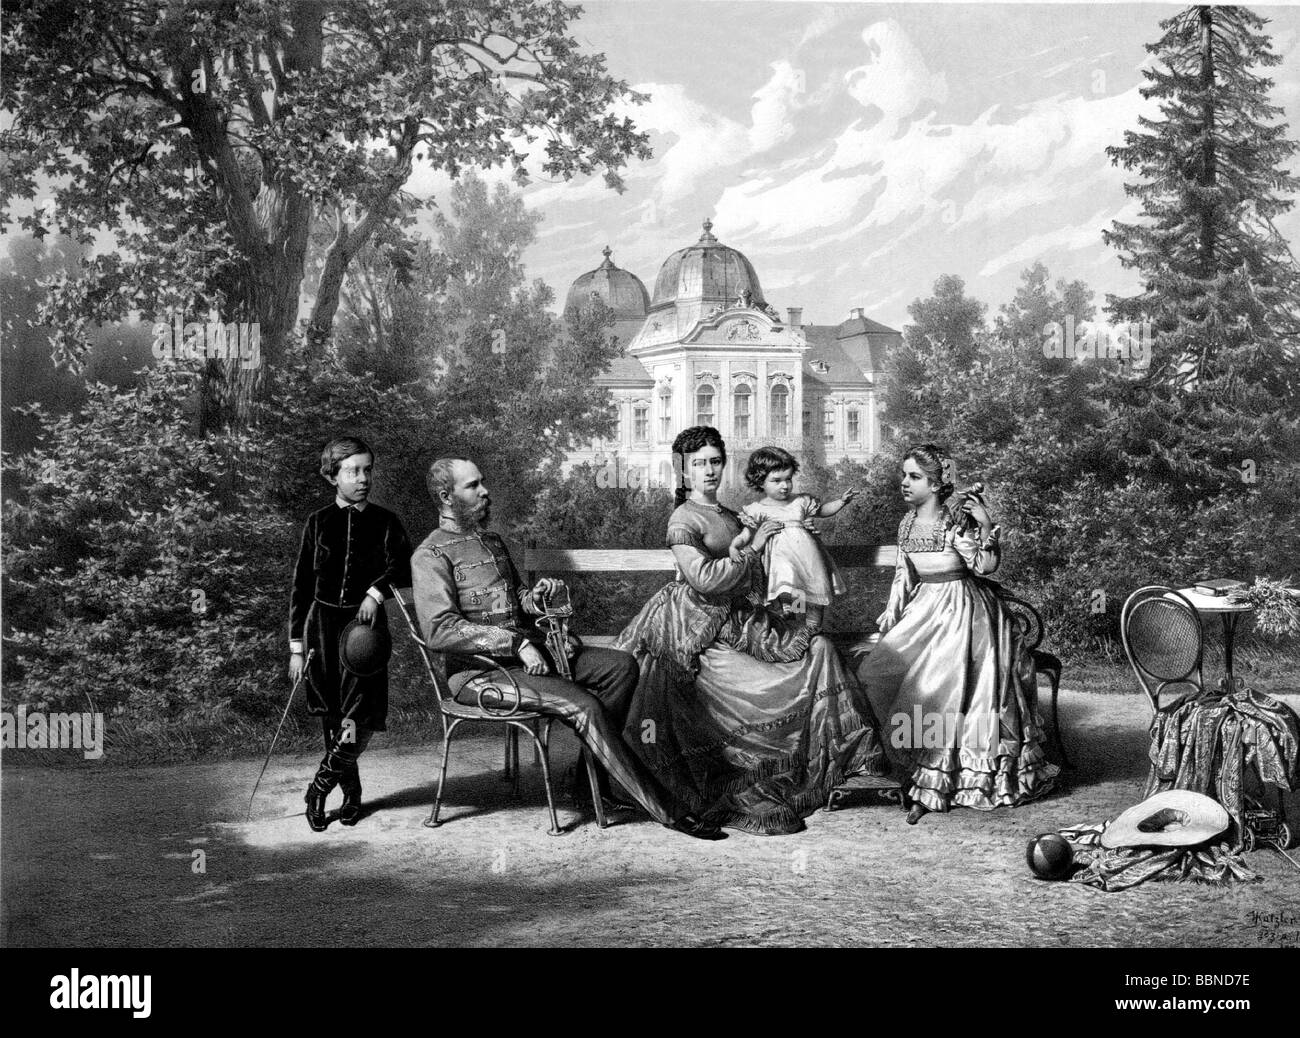 Franz Joseph i, 18.8.1830 - 21.11.1916, imperatore d'Austria dal 1848, con la sua famiglia nel giardino del Castello Godollo, litografia, dopo disegno di V. Katzler, 1871, Foto Stock